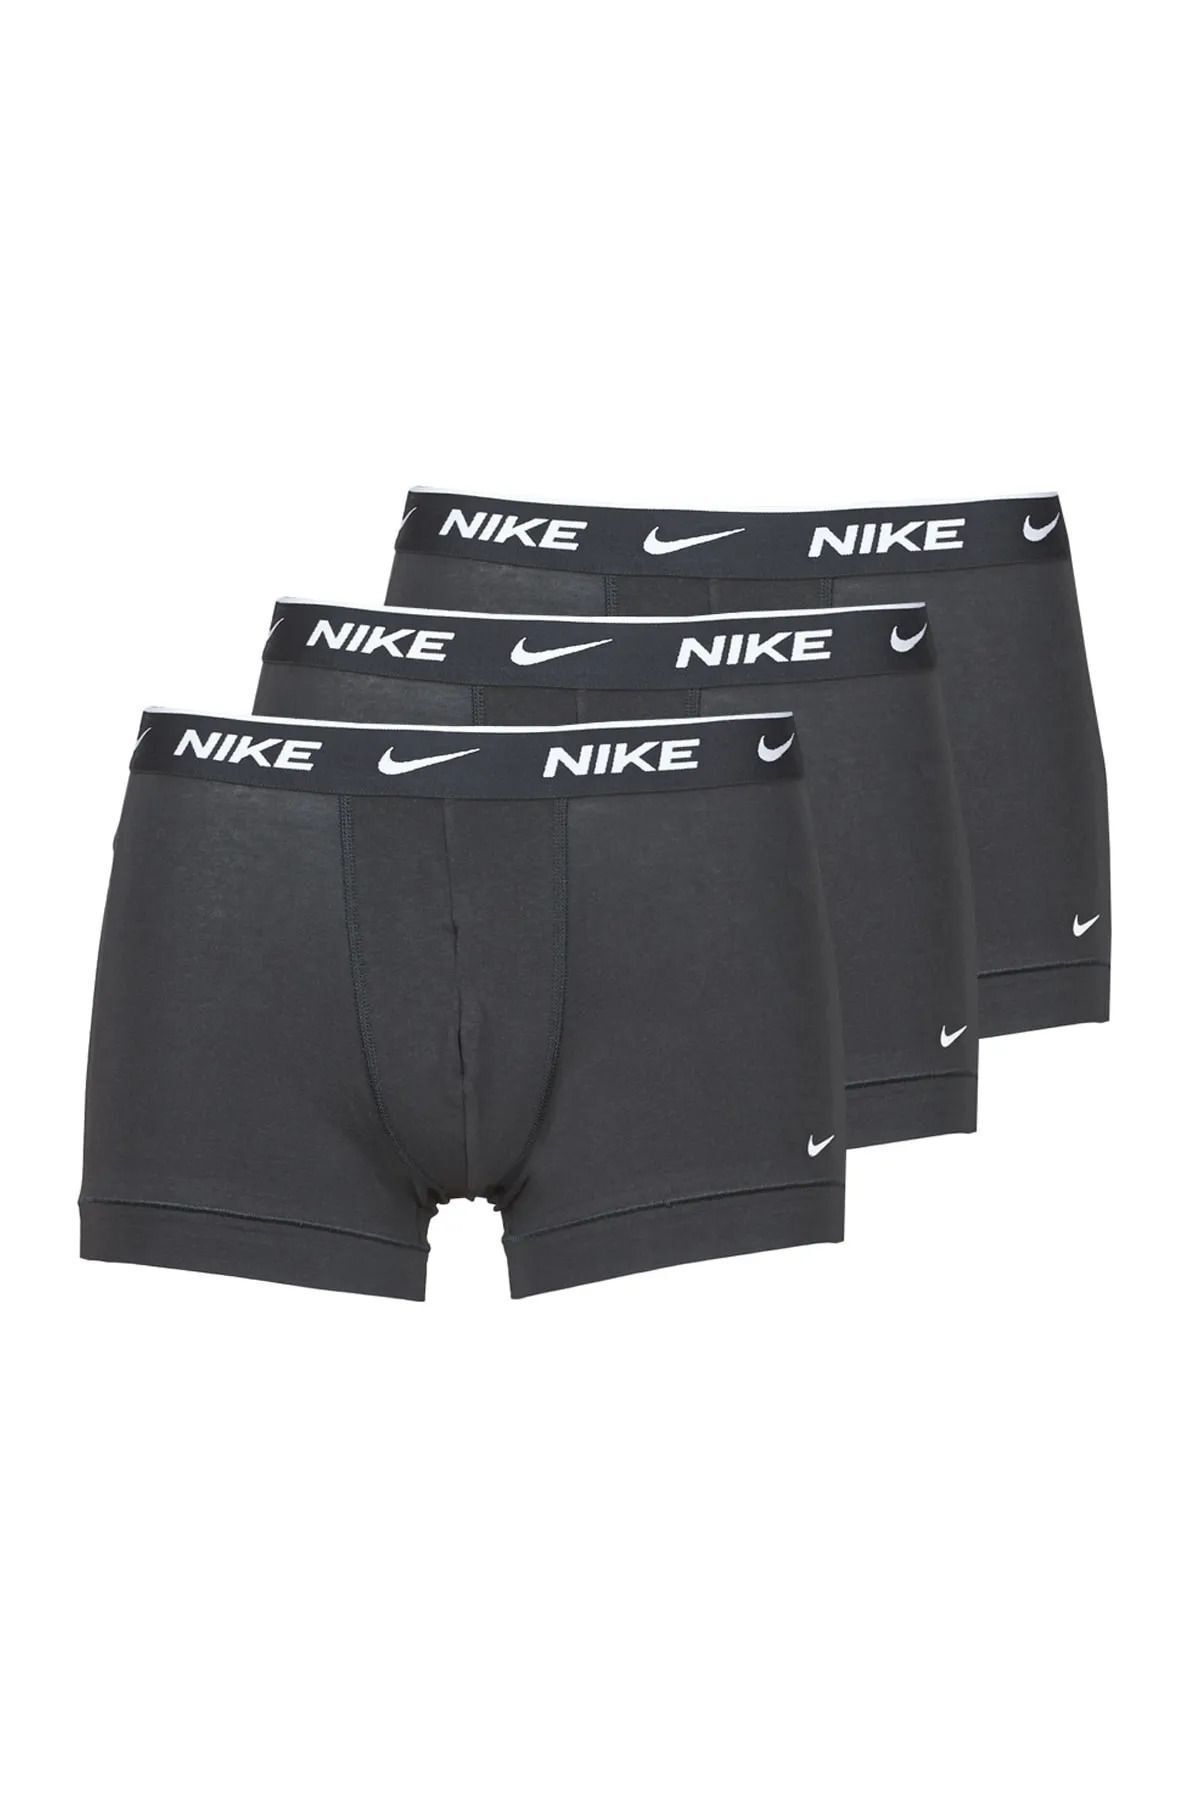 Nike Erkek Nike Marka Logolu Elastik Bantlı Günlük Kullanıma Uygun Siyah Boxer 0000ke1008-ub1